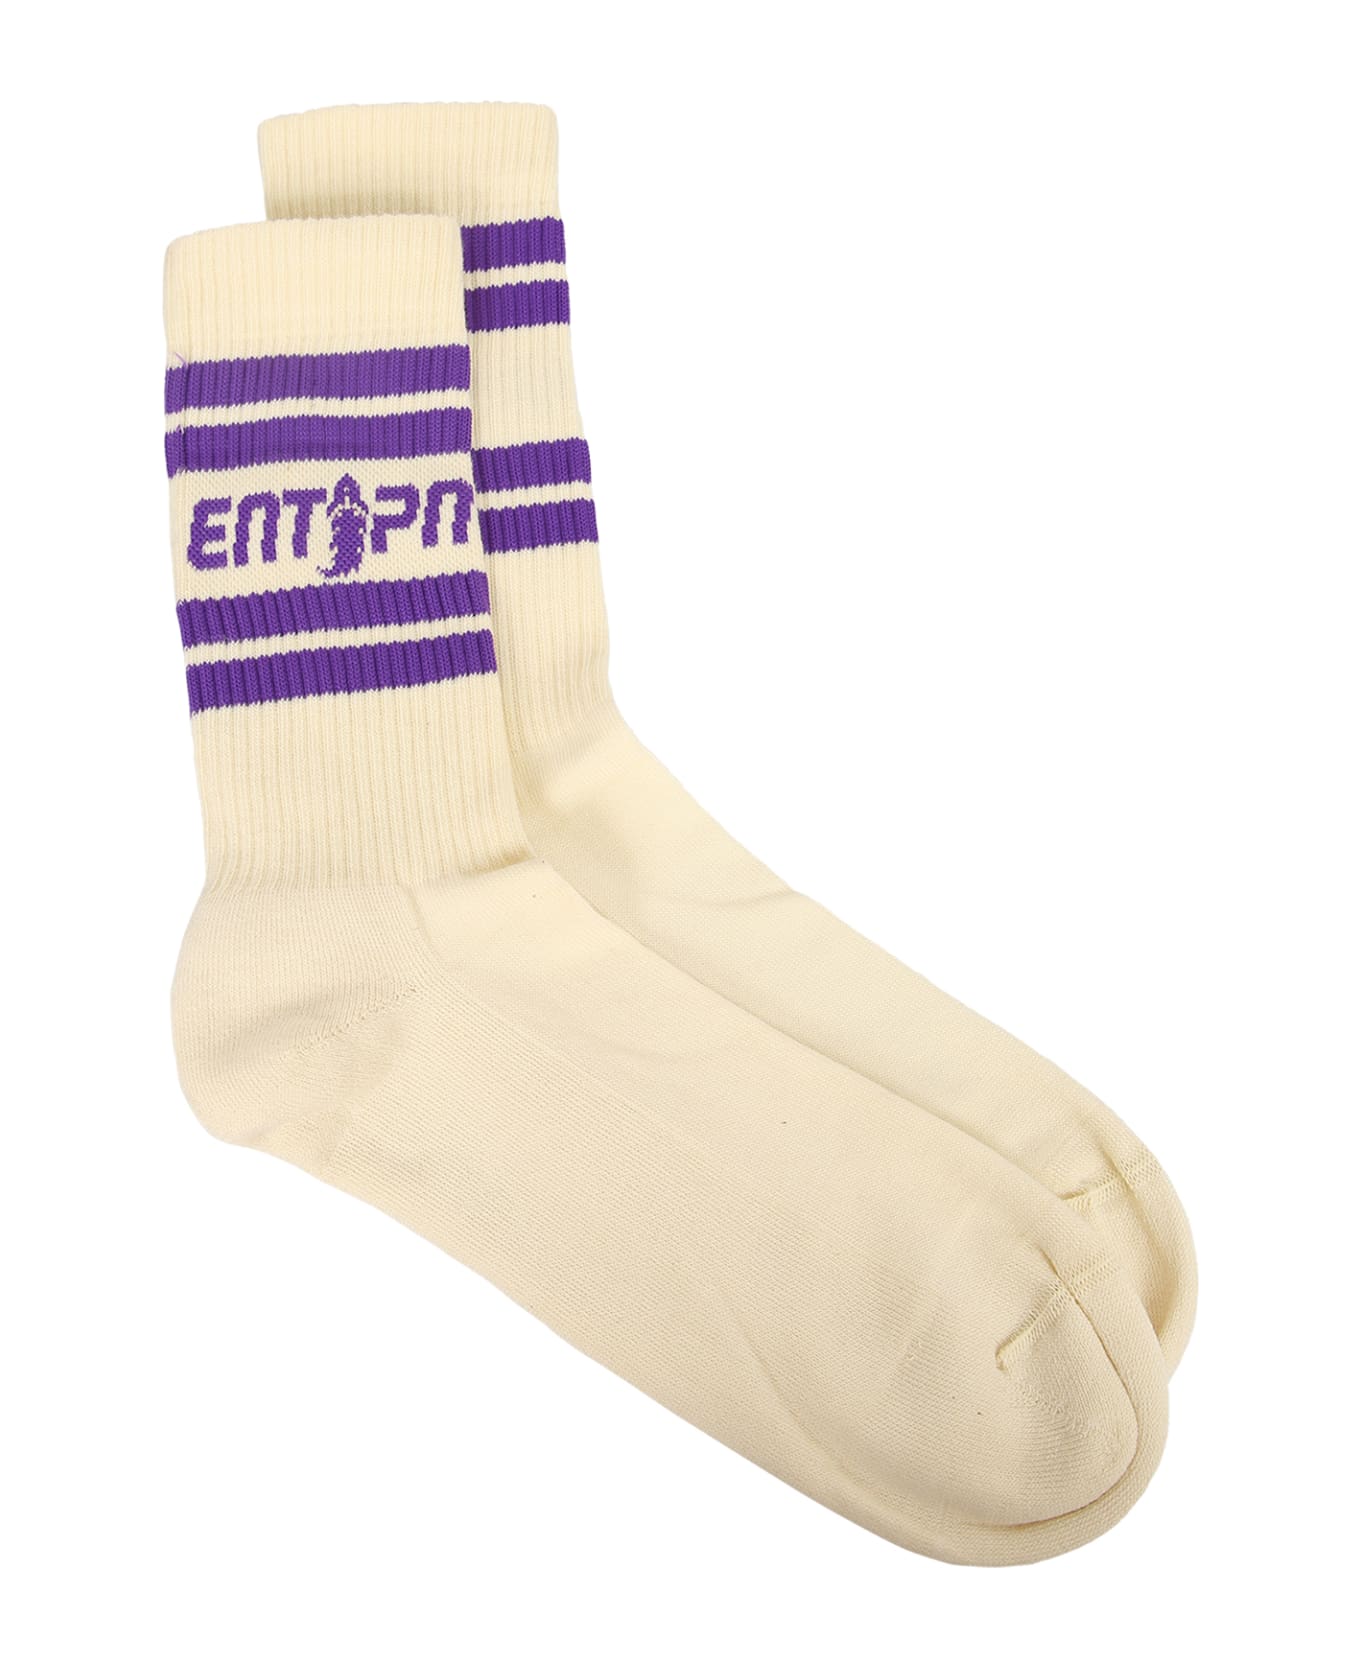 Enterprise Japan Logo Socks - White